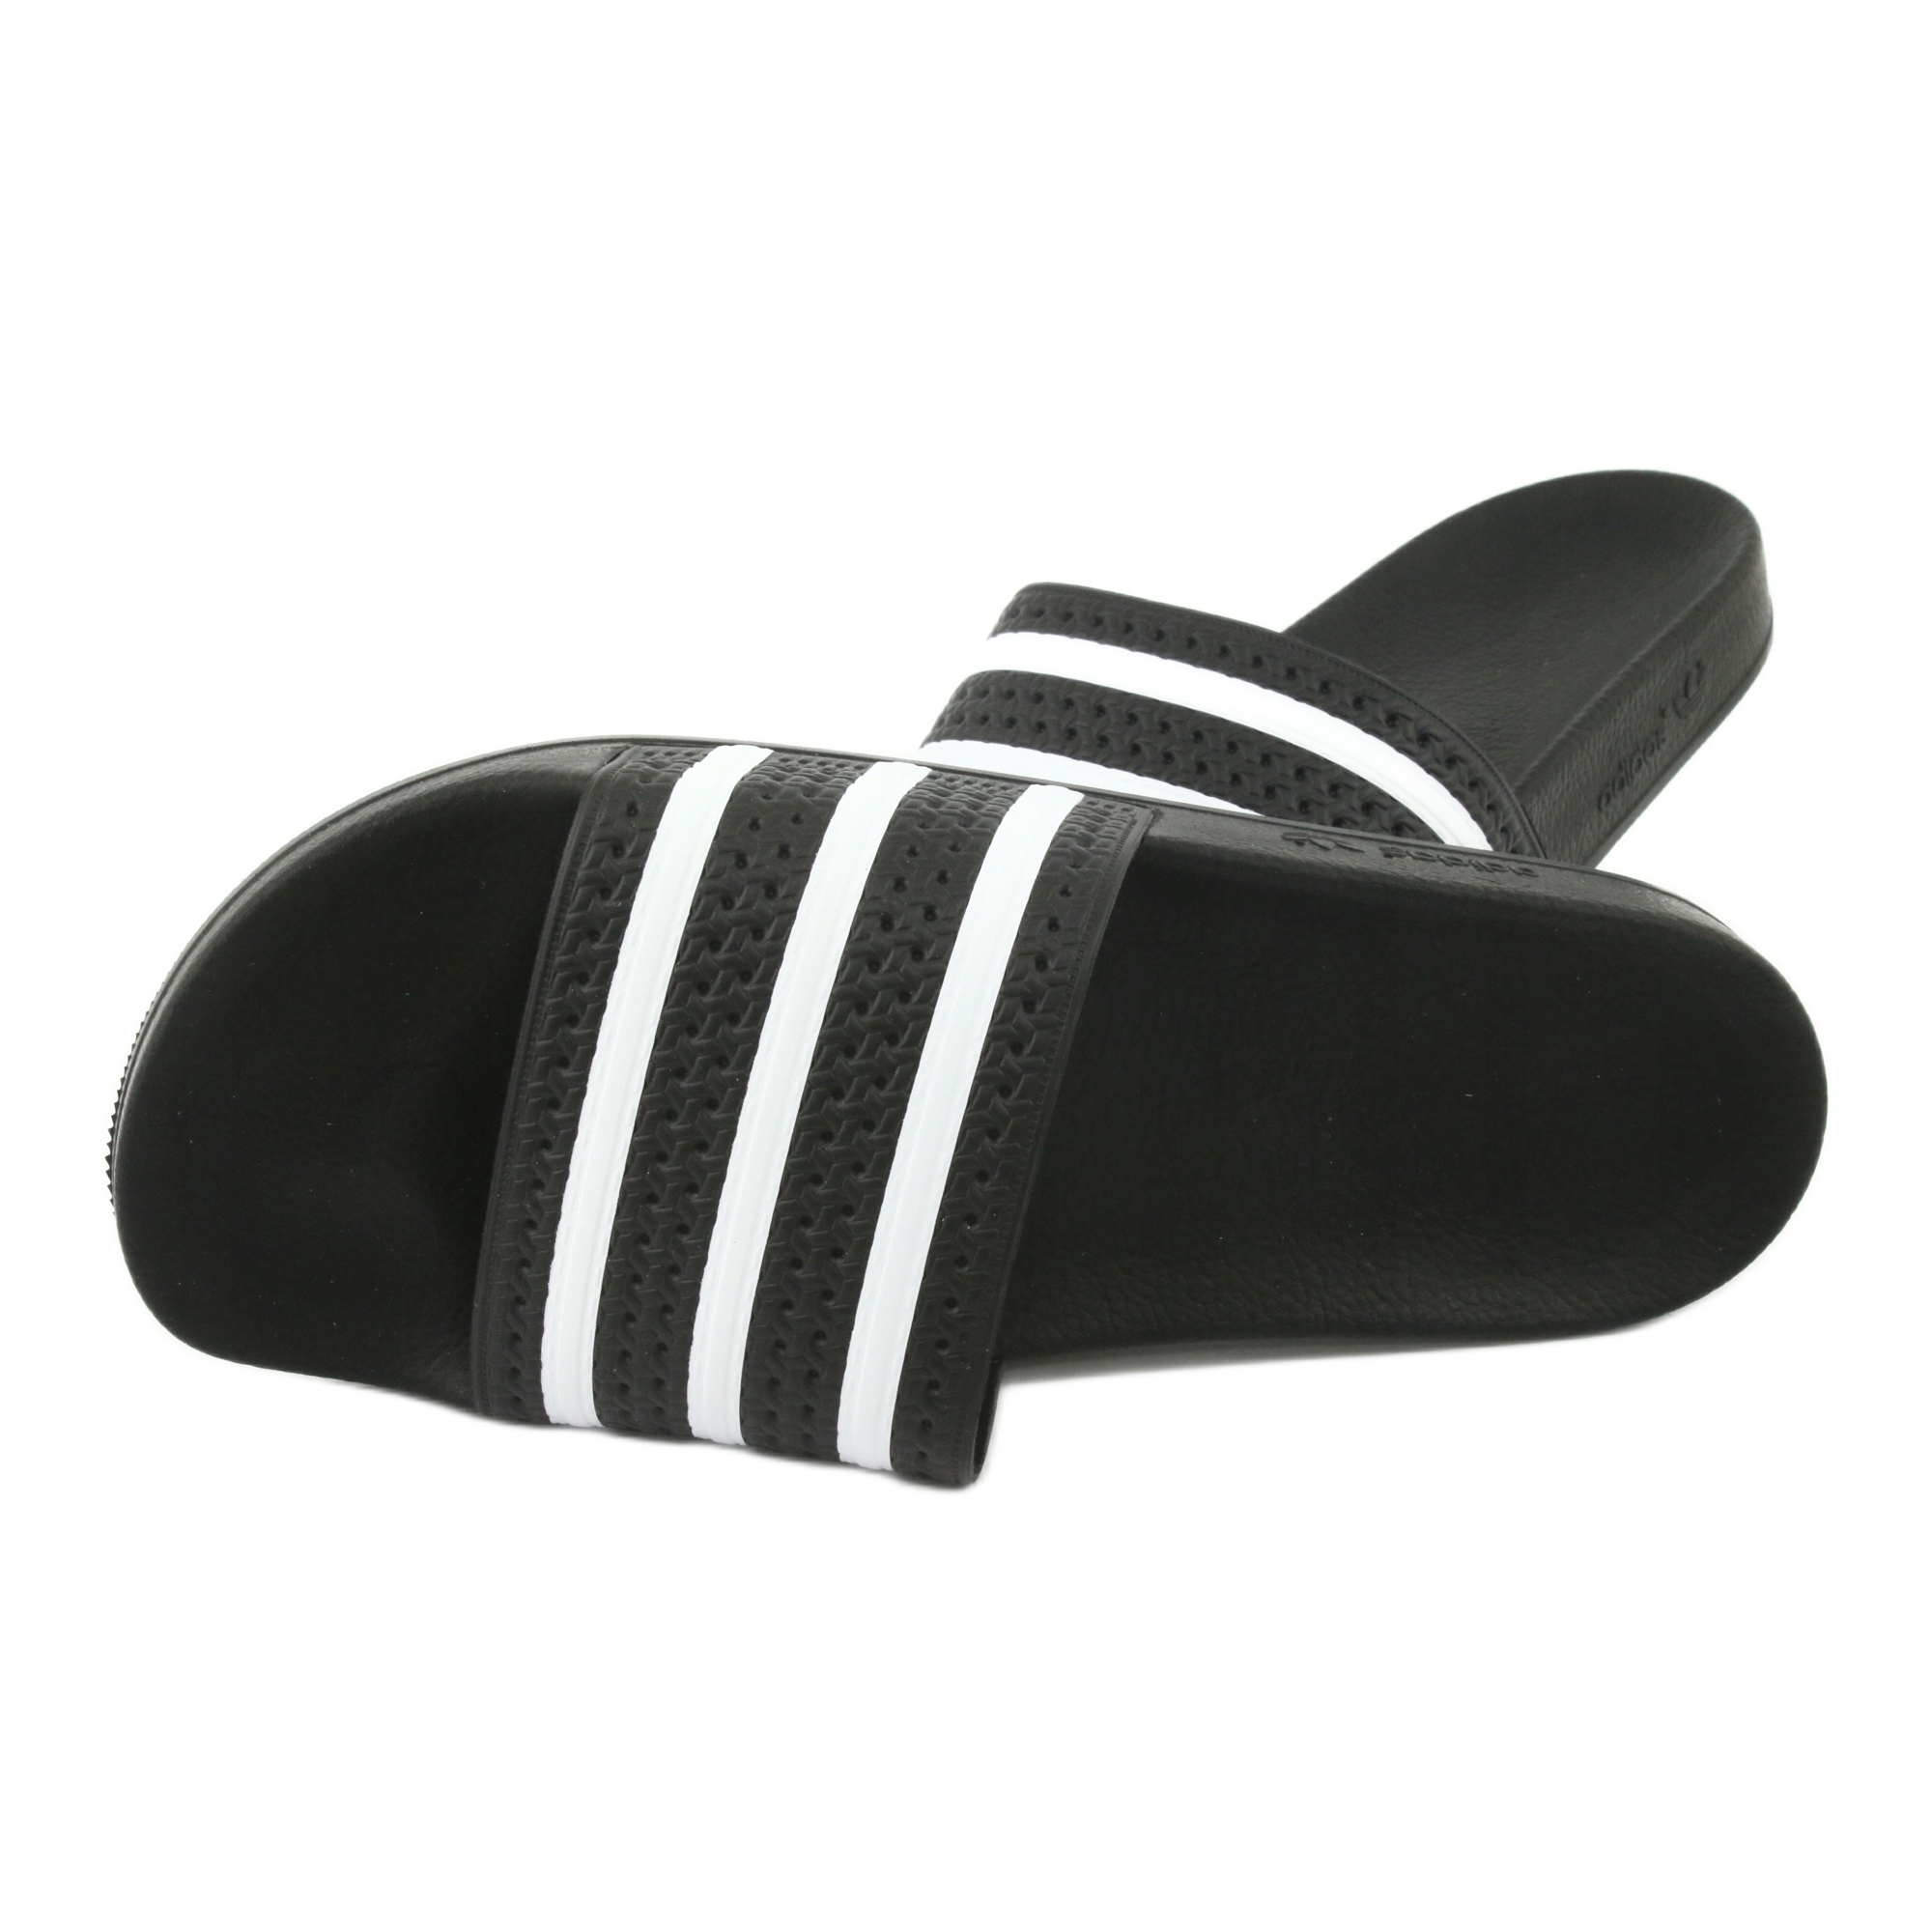 Adidas Originals Adilette M 280647 white black -